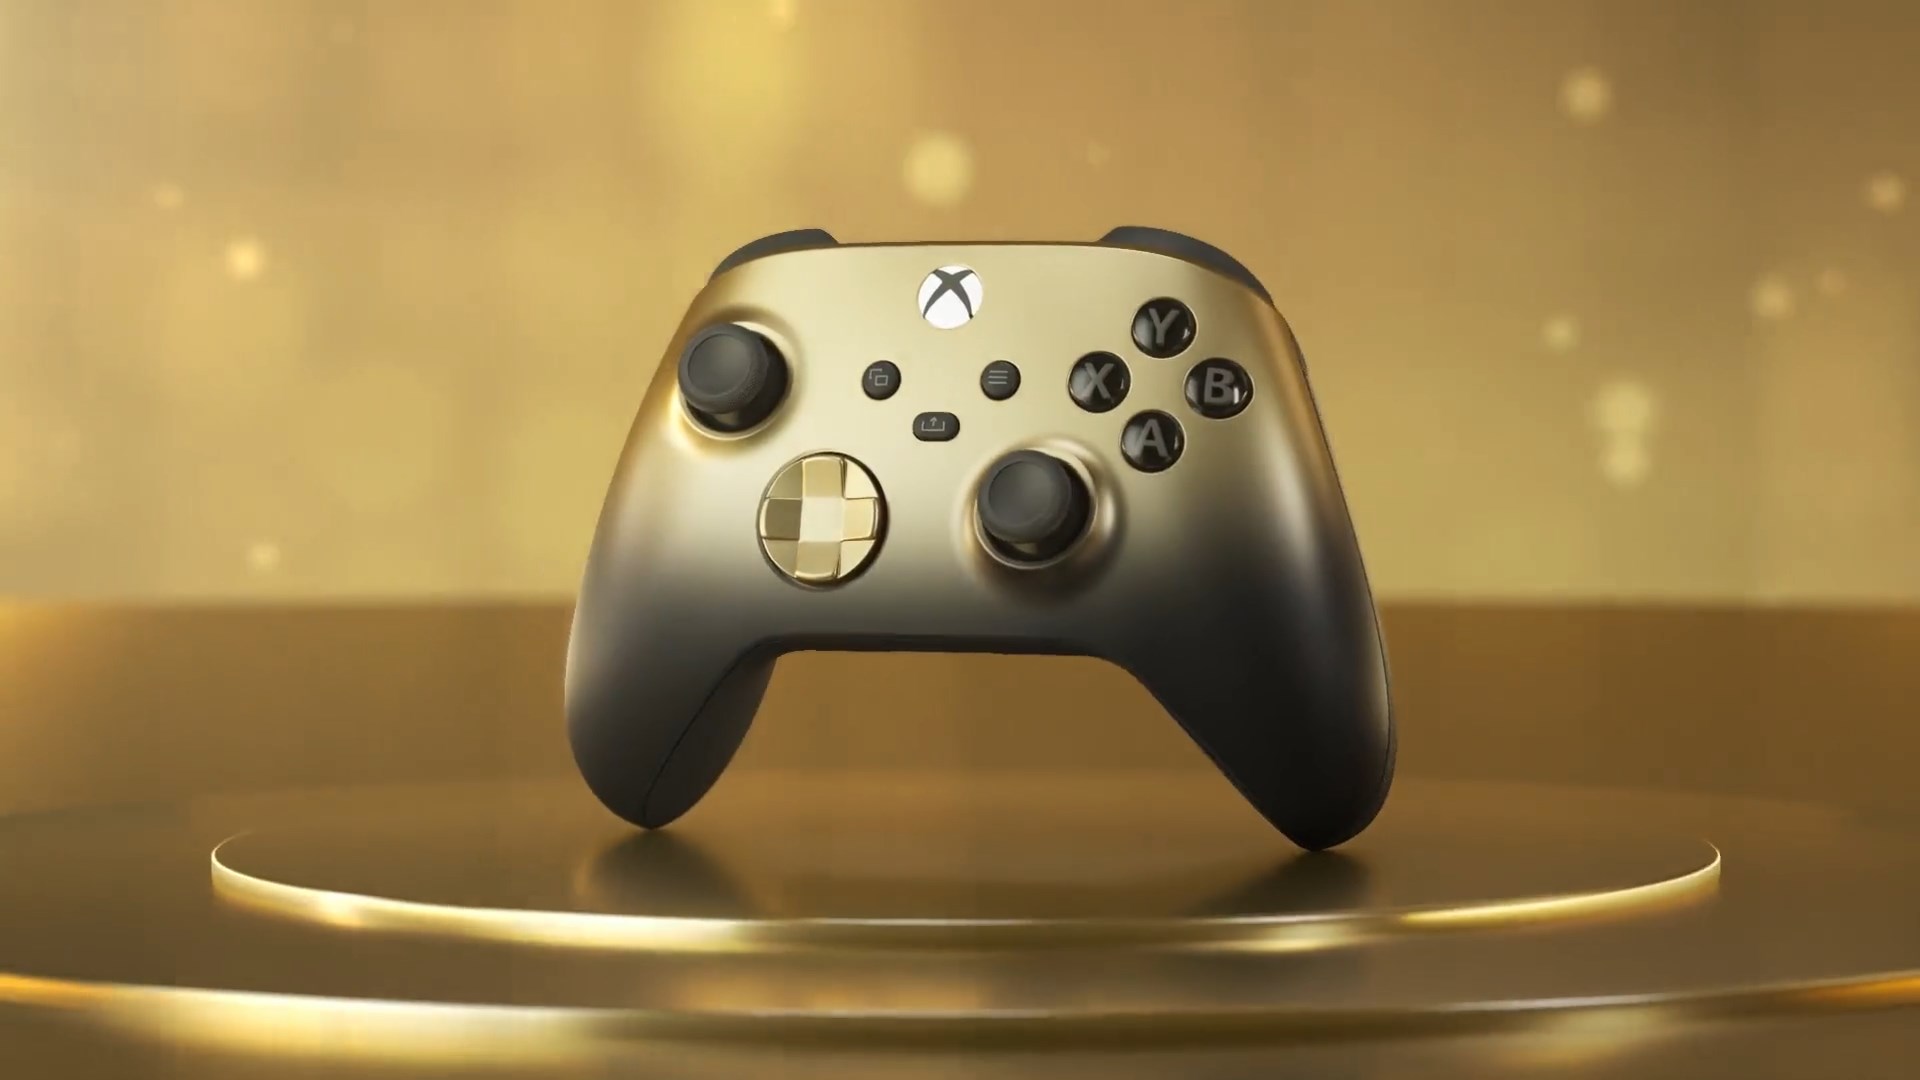 Xbox推出黑金特別款手柄 售價70美元10月17日發售